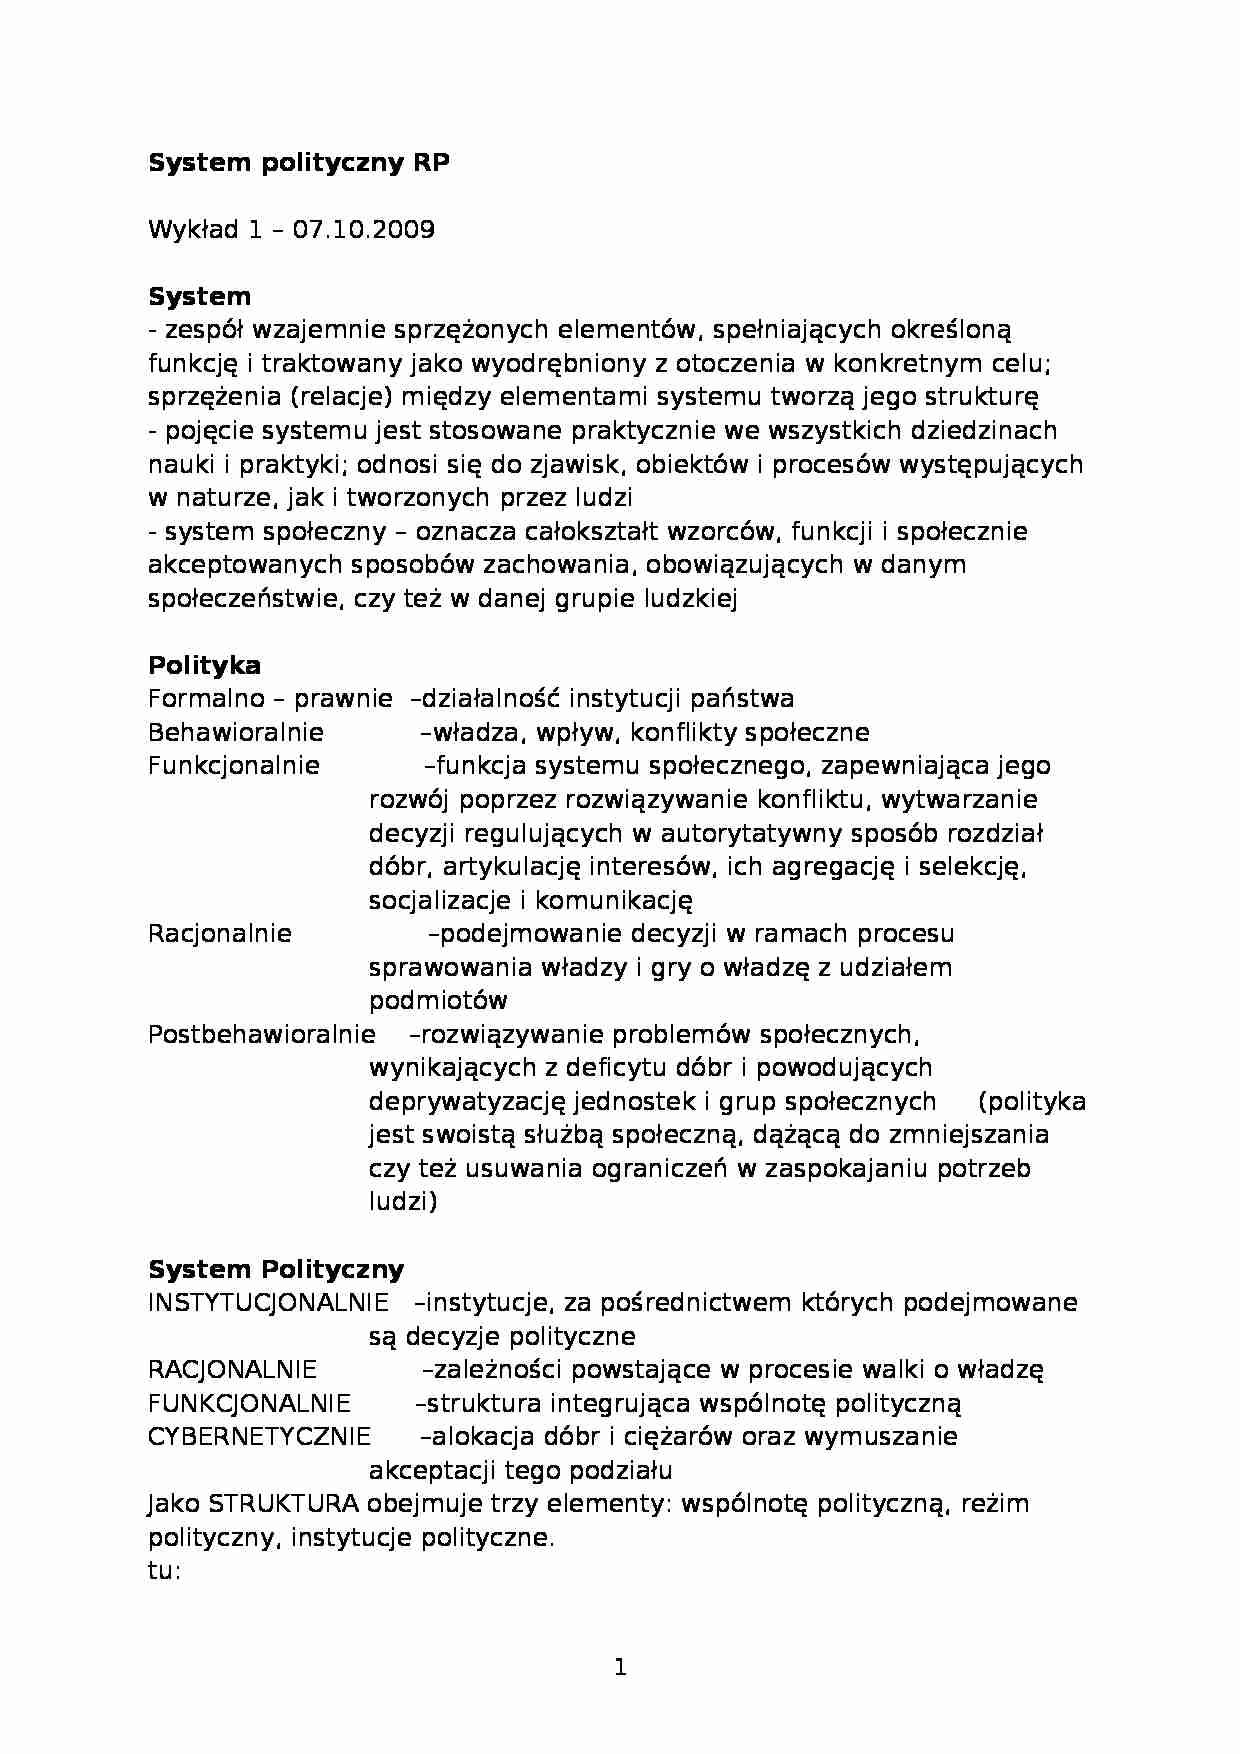 System polityczny Rzeczypospolitej Polskiej - wykład - strona 1